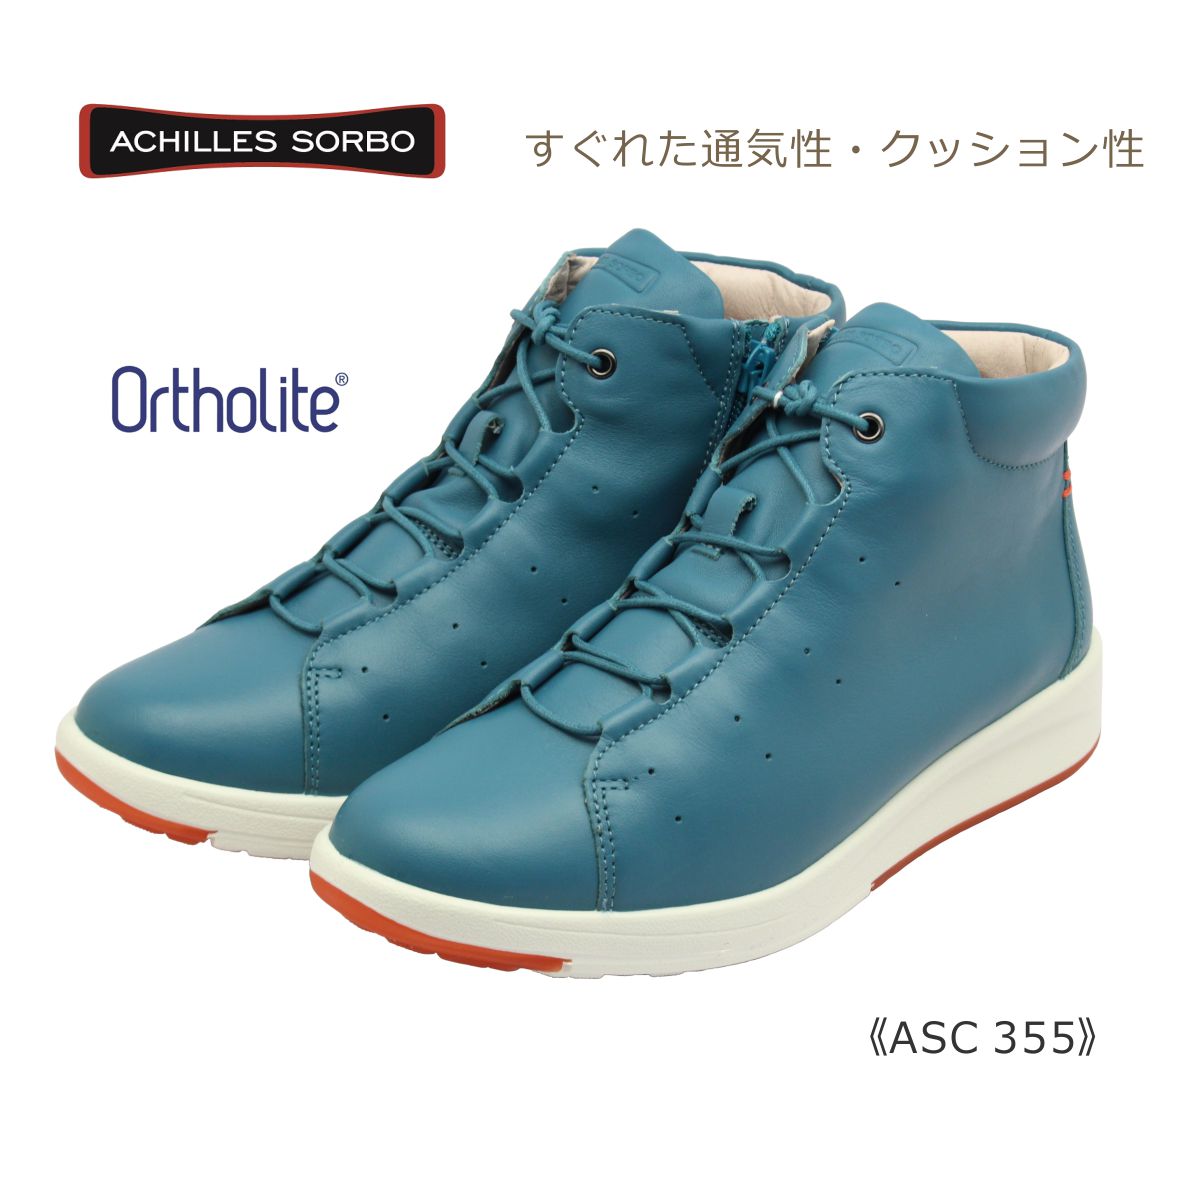 アキレス・ソルボ 靴 レディース Achilles SORBO アキレス ソルボ レディース ウォーキング ASC 355 3550 オーソライト 靴 ブルー グリーン